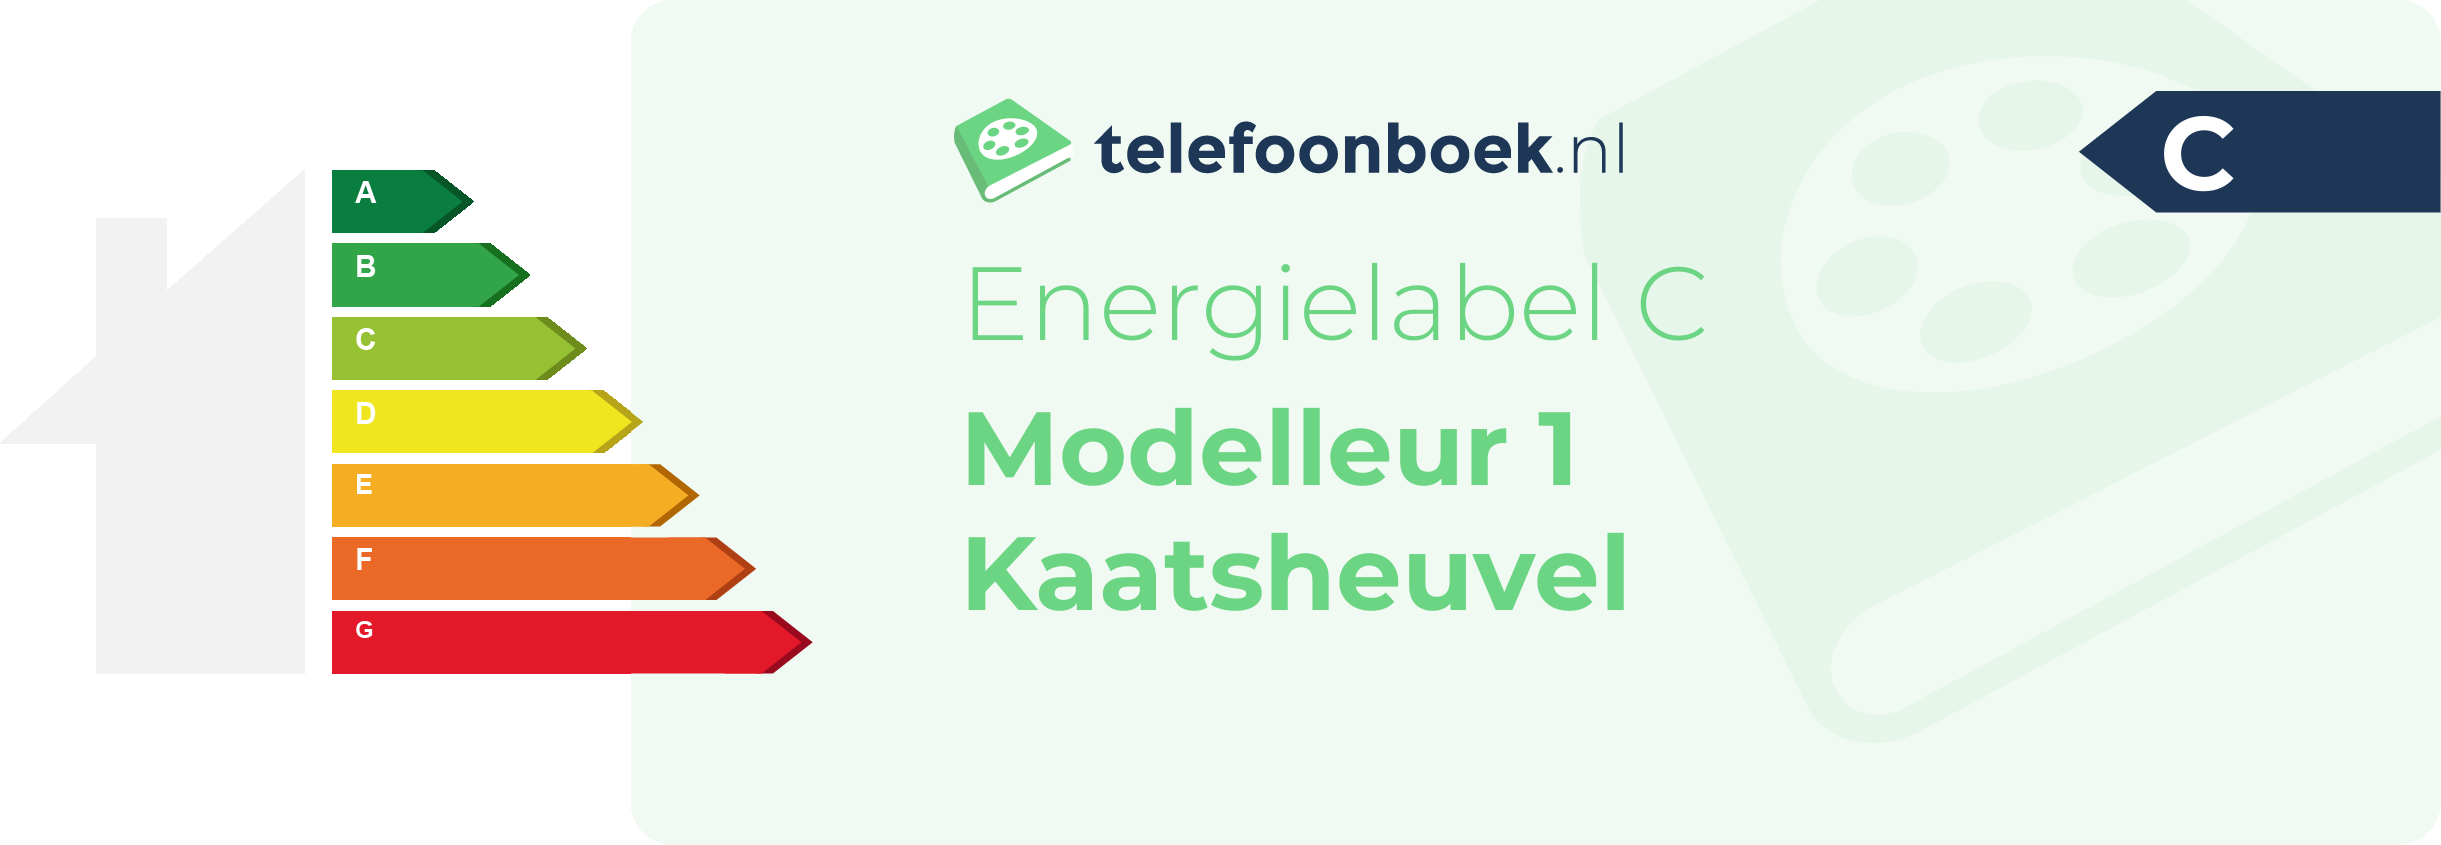 Energielabel Modelleur 1 Kaatsheuvel